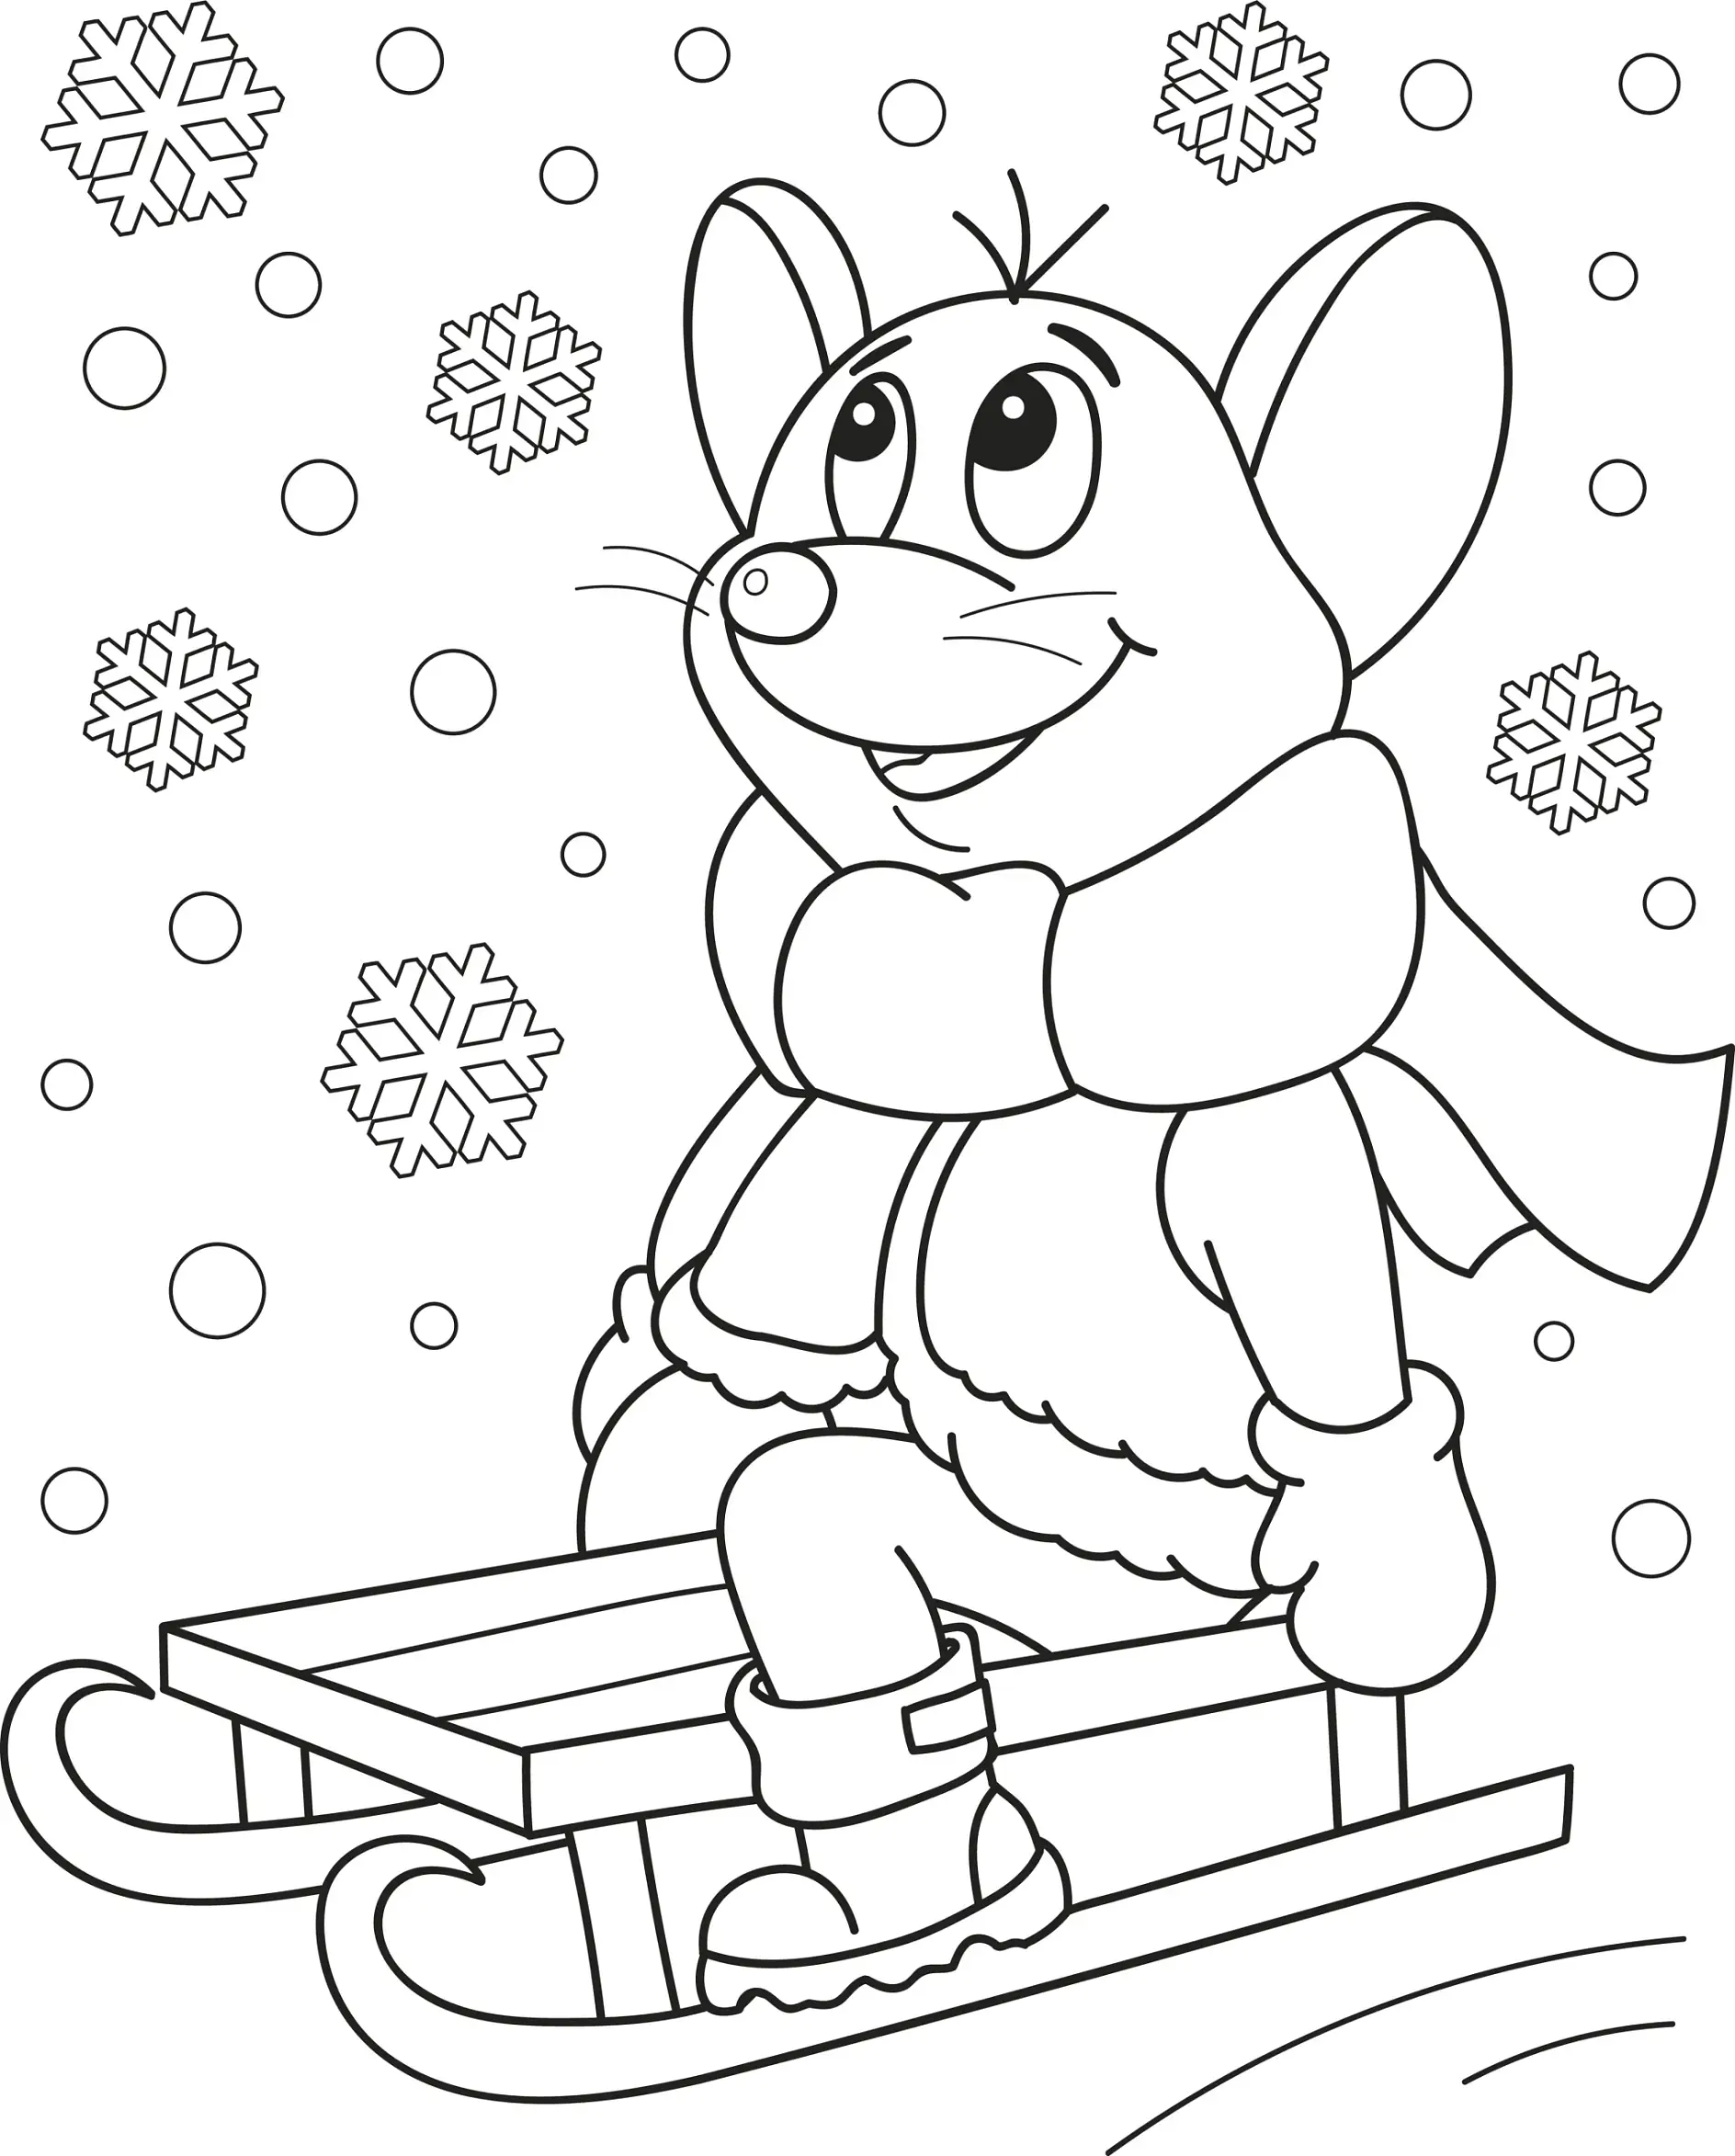 Ausmalbild Maus auf Schlitten unter Schneeflocken